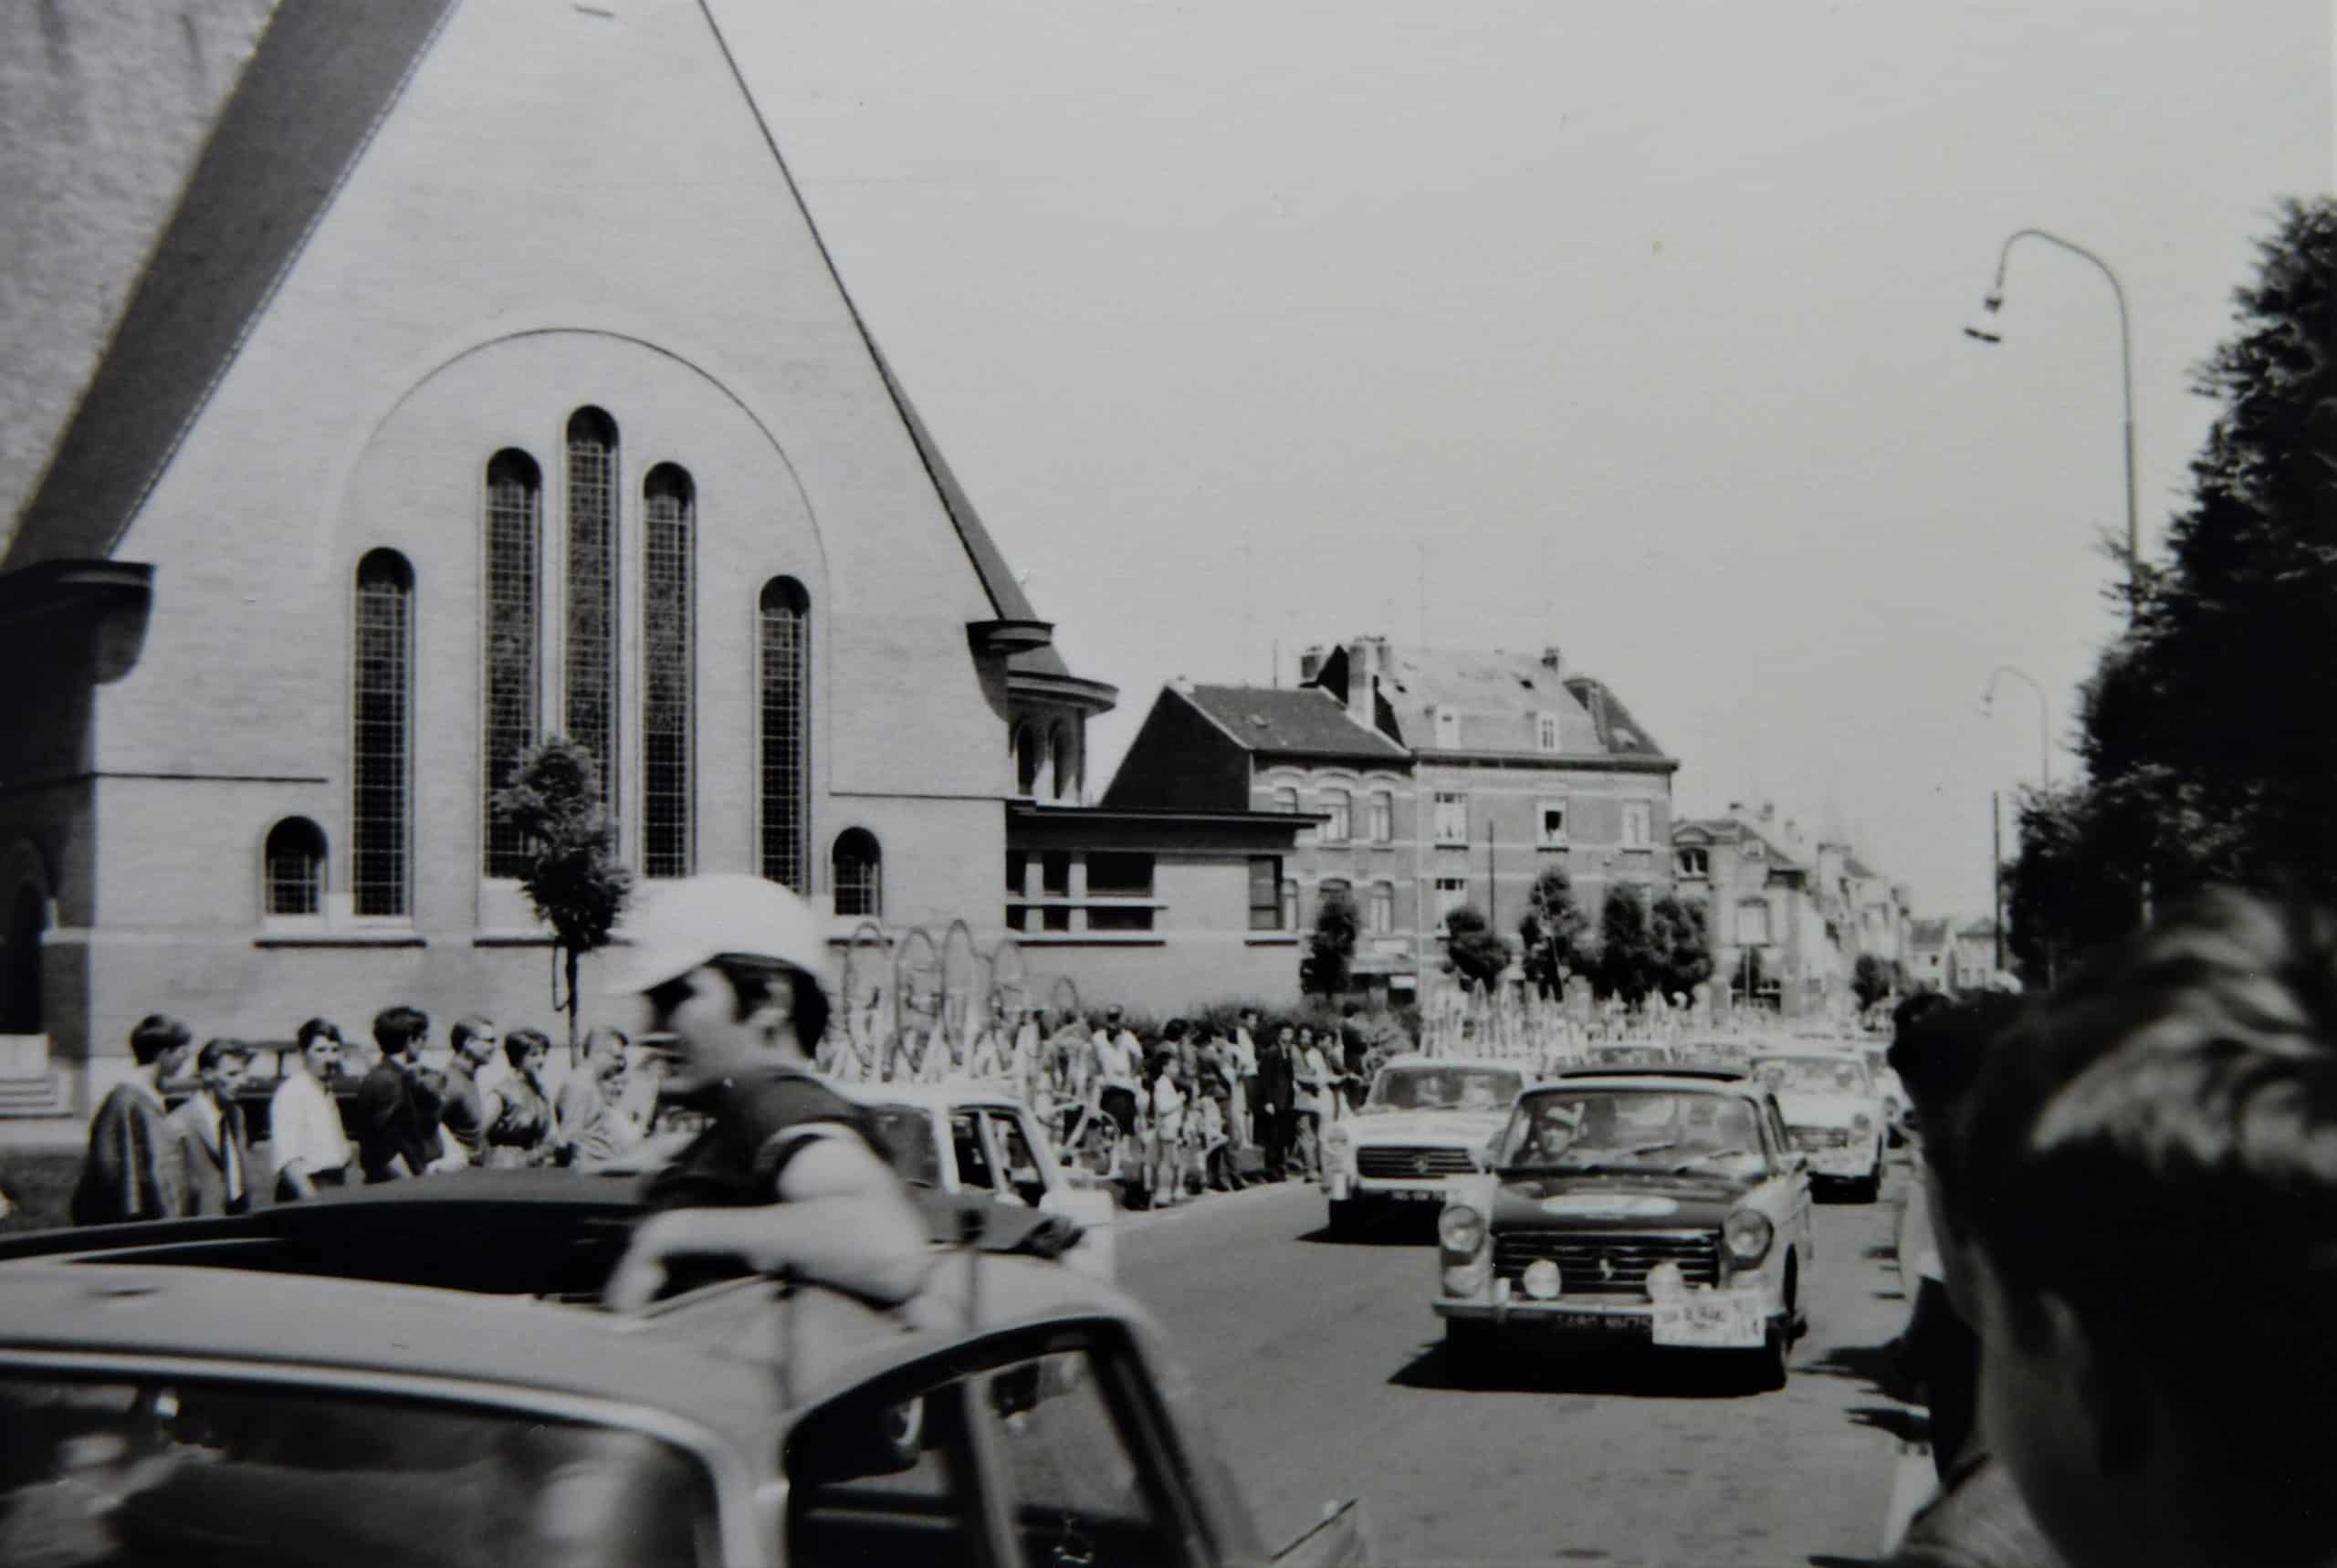 Le Tour de France passe par Anderlecht en 1968. Photo publiée avec l'aimable autorisation de Christian Polfliet, colorisée et améliorée par MyHeritage.